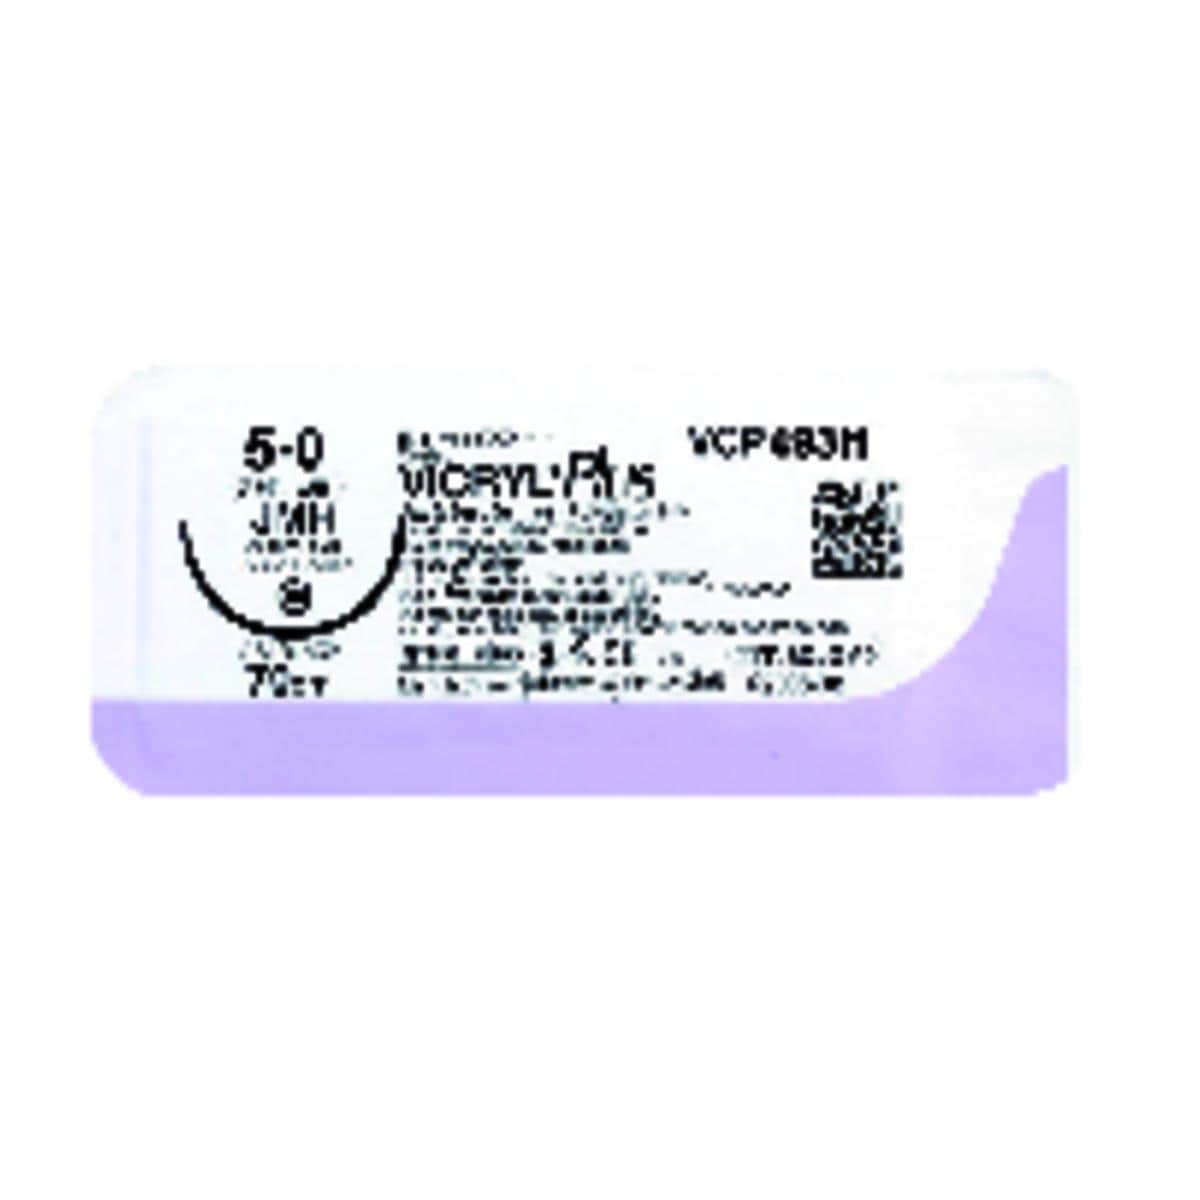 Fil Vicryl Plus anti-bactrien ETHICON - MPVCP500H - Bote de 36